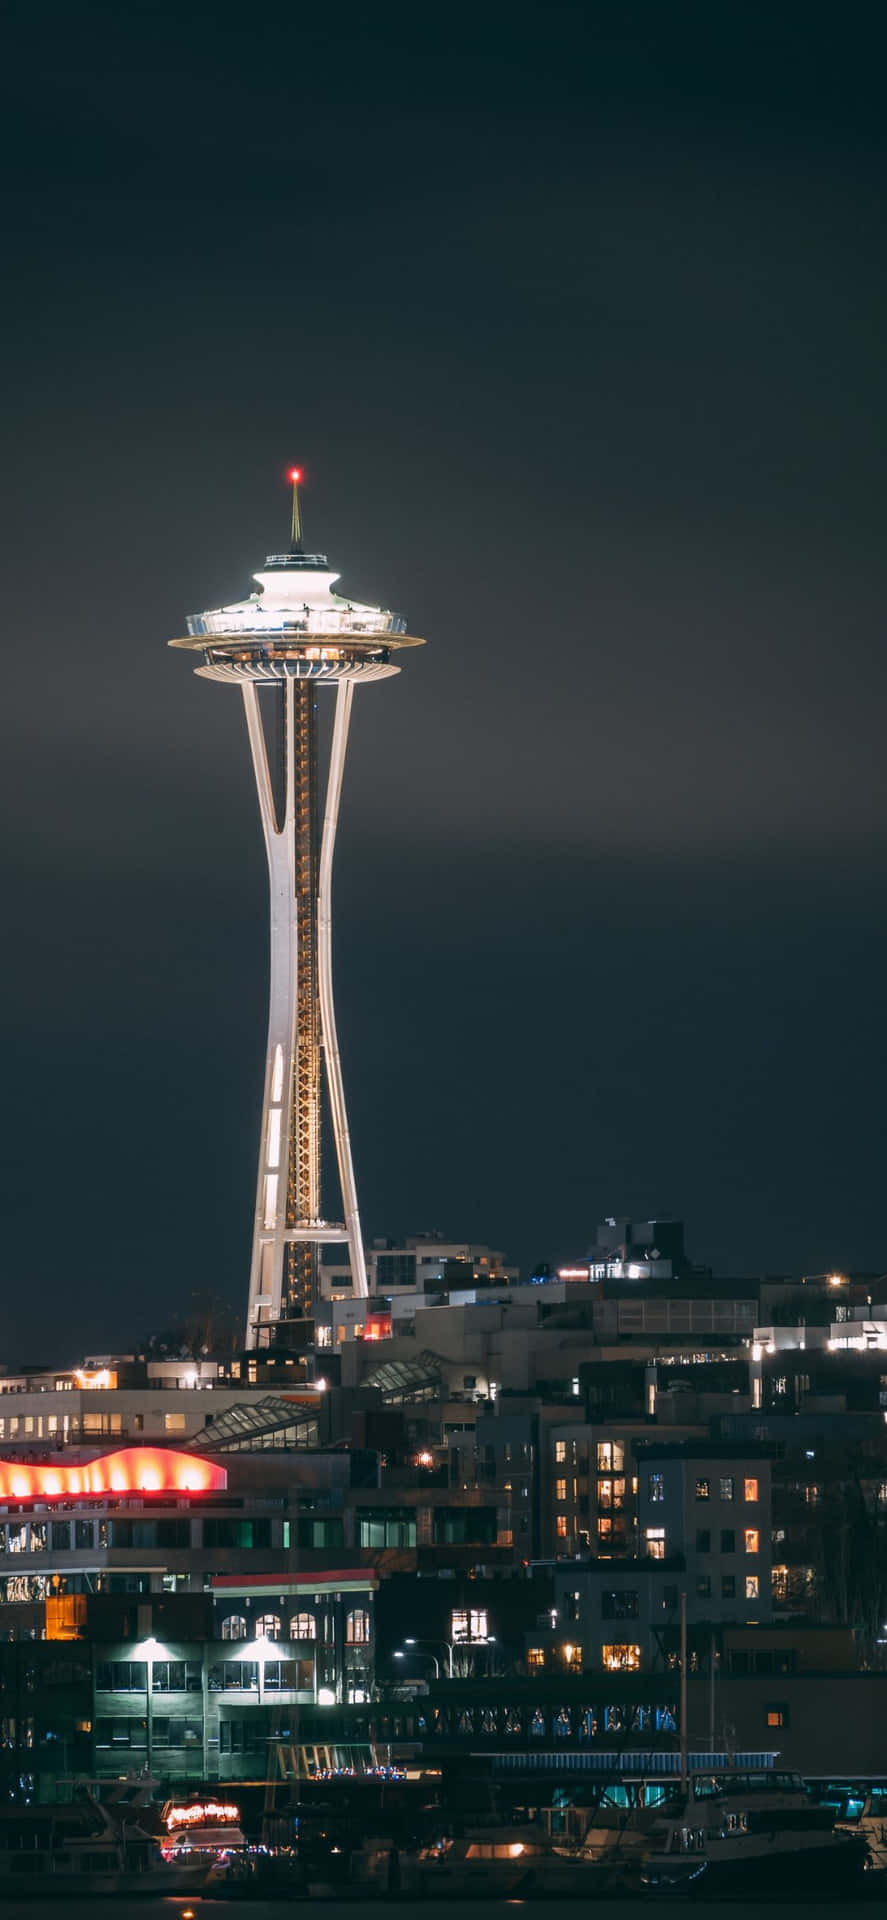 Spektakulärsolnedgång I Seattle Med Iphone X Som Bakgrundsbild.